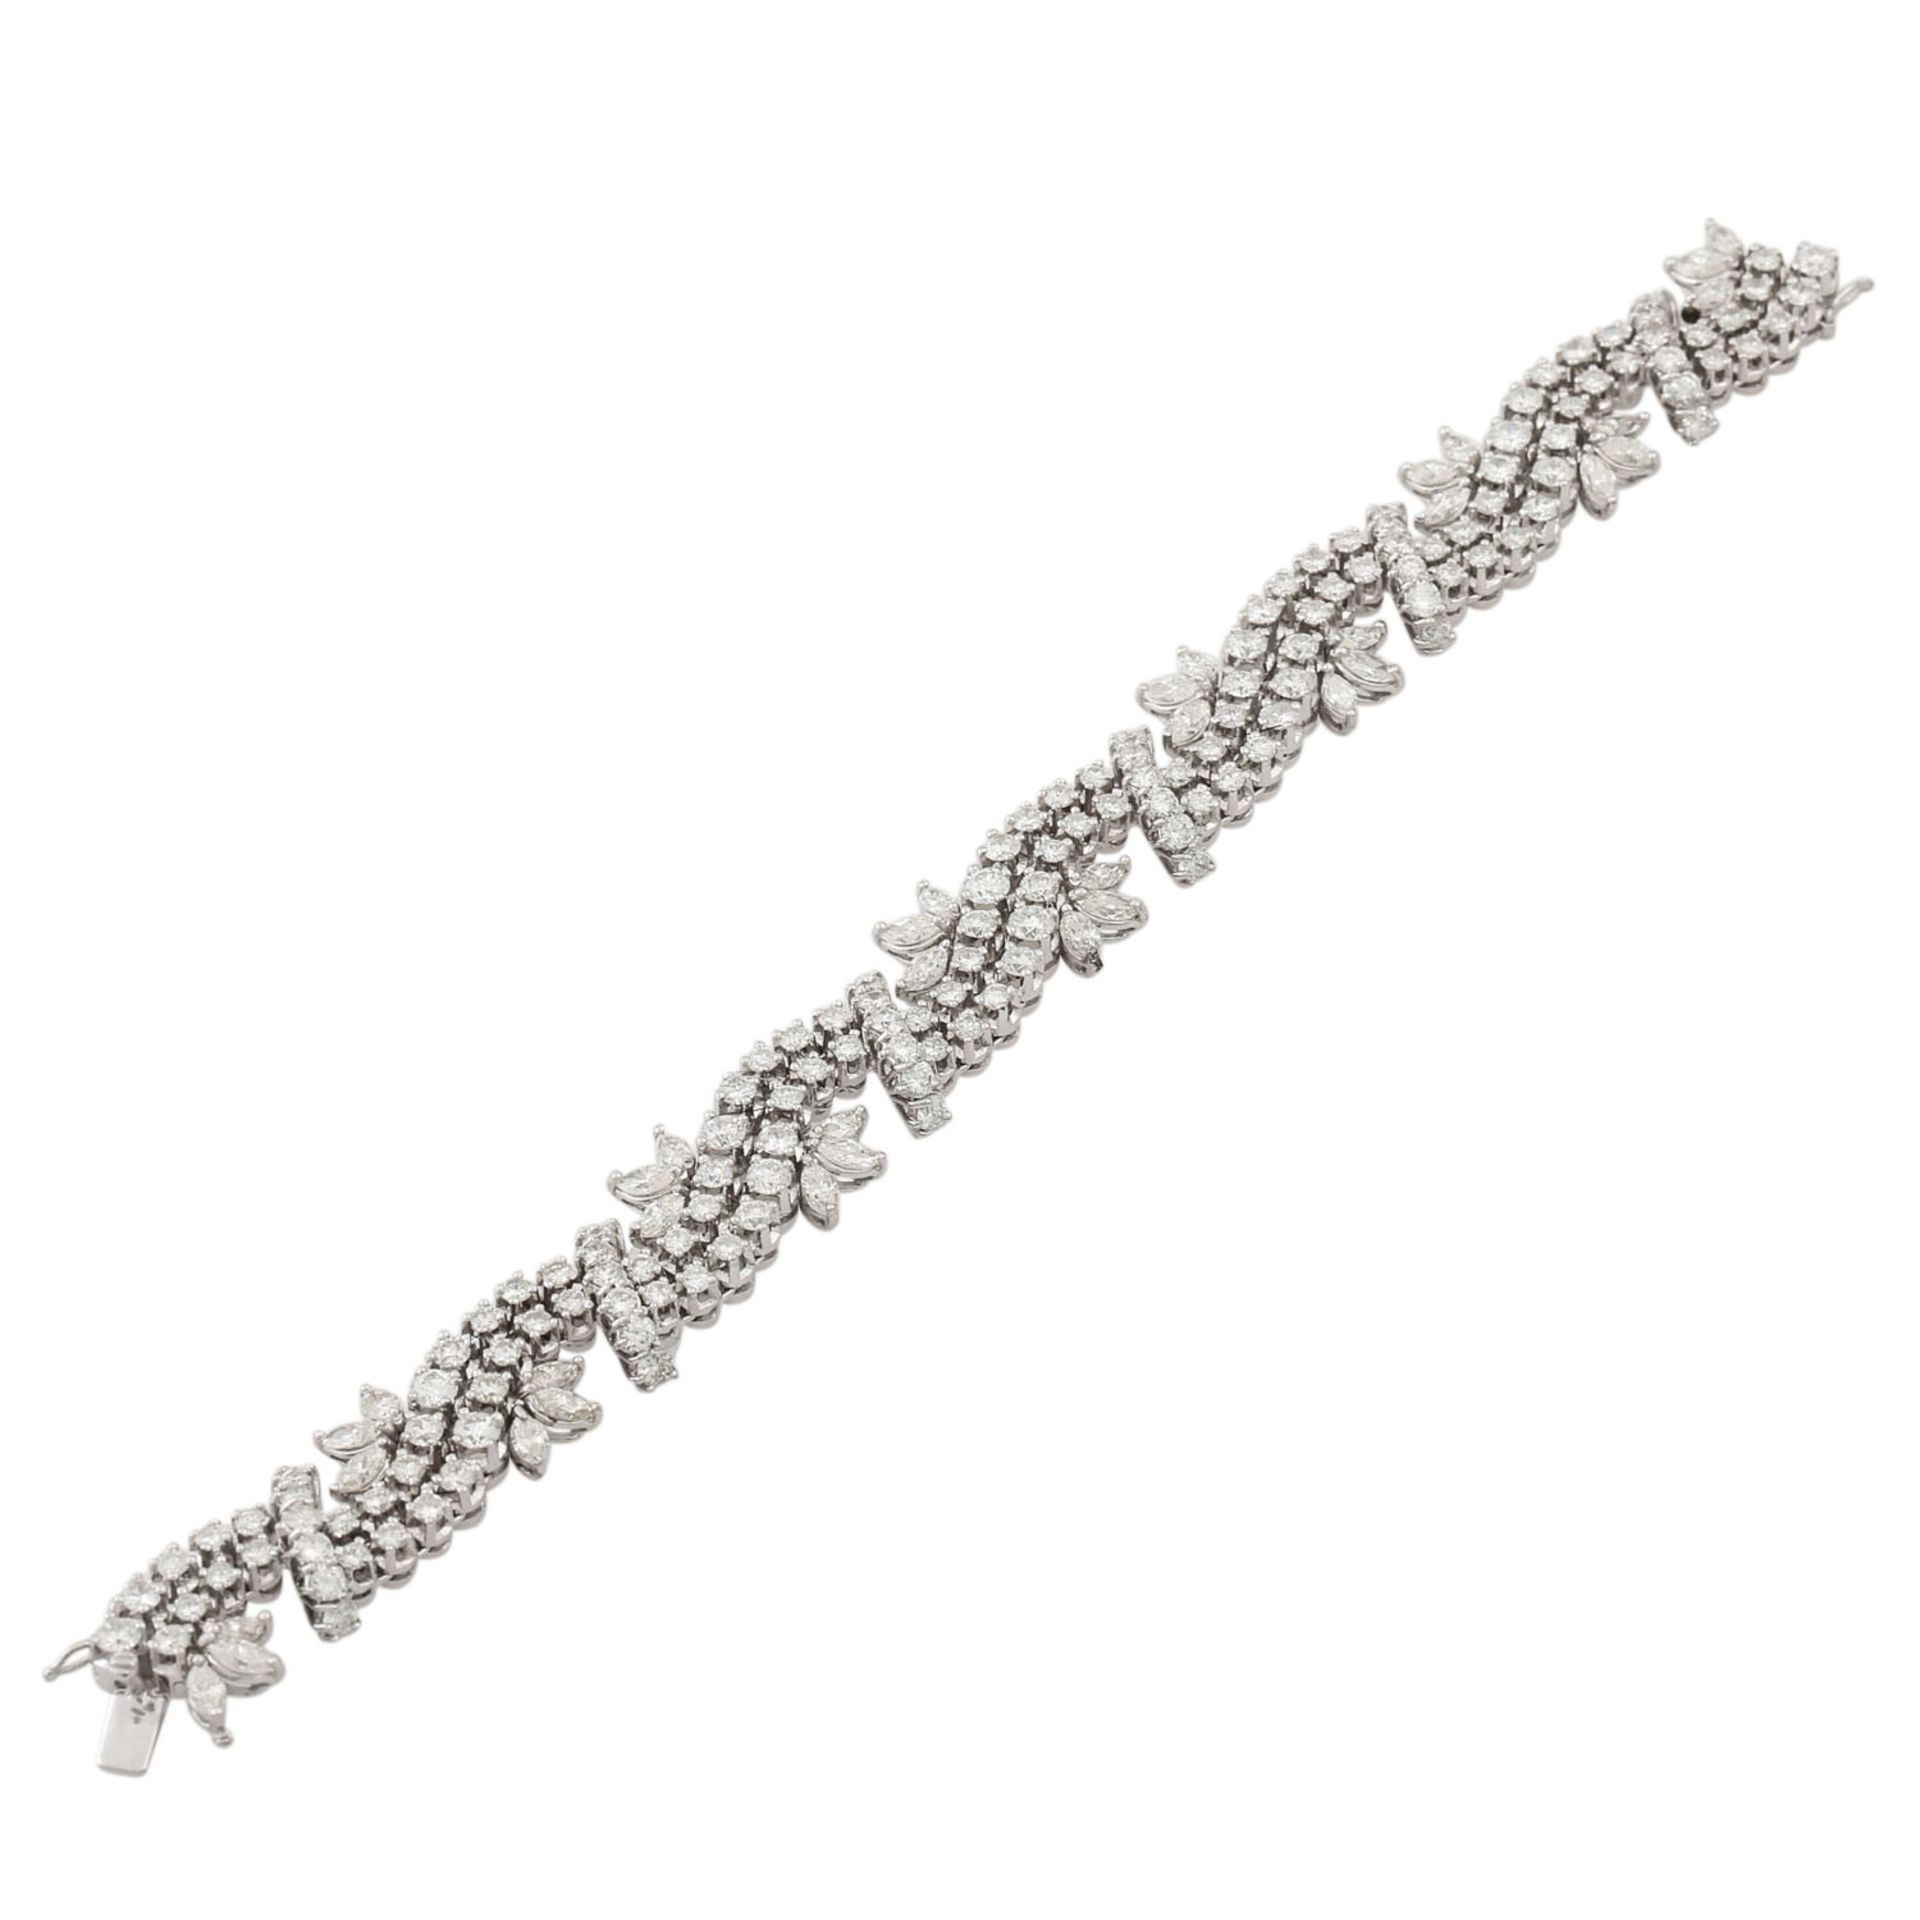 Armband mit 150 Brillanten zus. ca. 10 ct und 36 Diamantnavettes zus. ca. 5,7 ct, ca. - Image 3 of 6